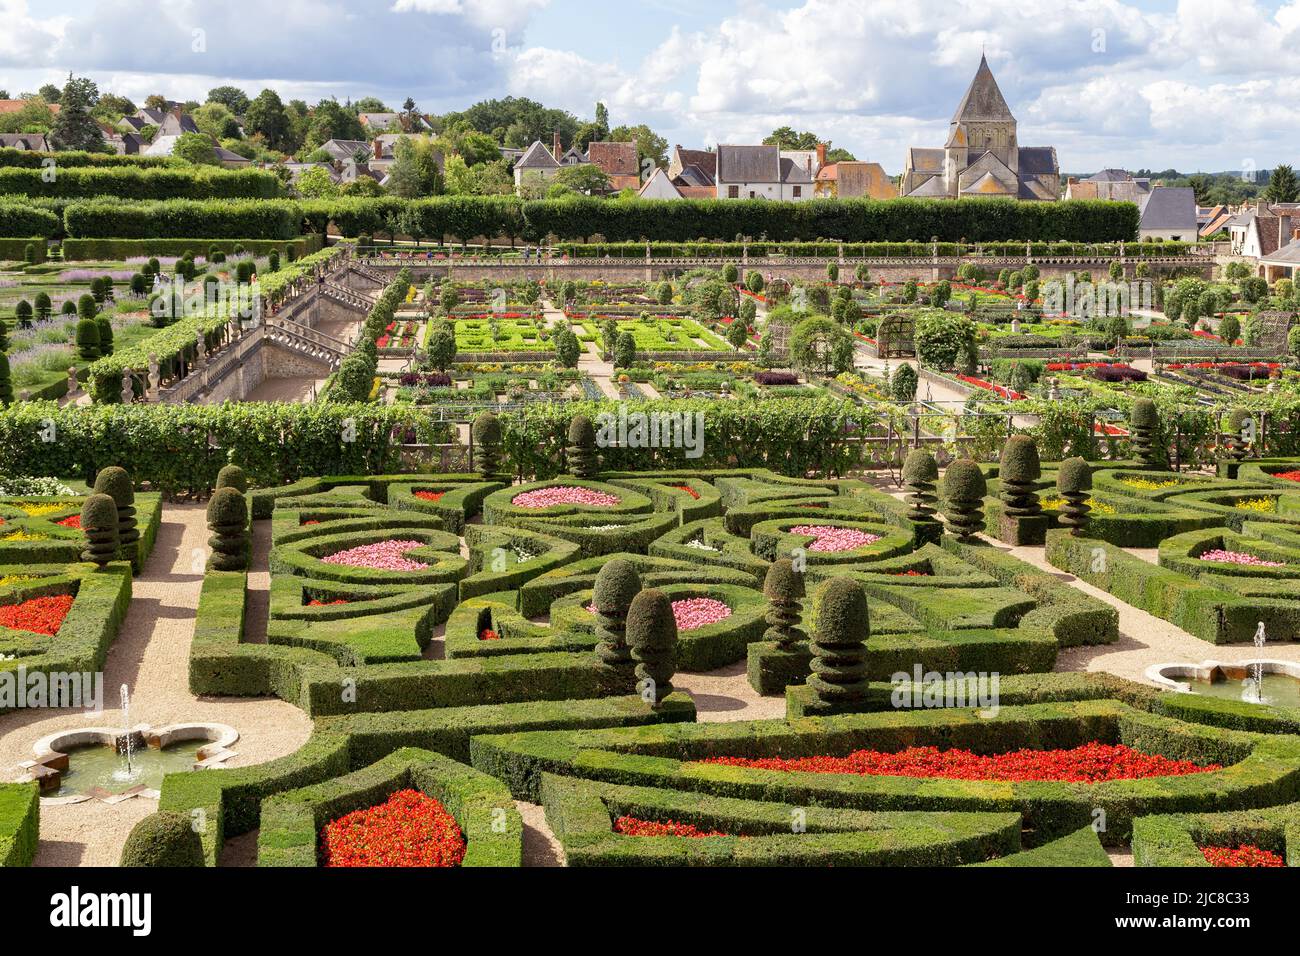 VILLANDRY, FRANCIA - 7 DE SEPTIEMBRE de 2019: Esta es una vista de los Jardines del Castillo de Villandry y el pueblo adyacente en el Valle del Loira. Foto de stock